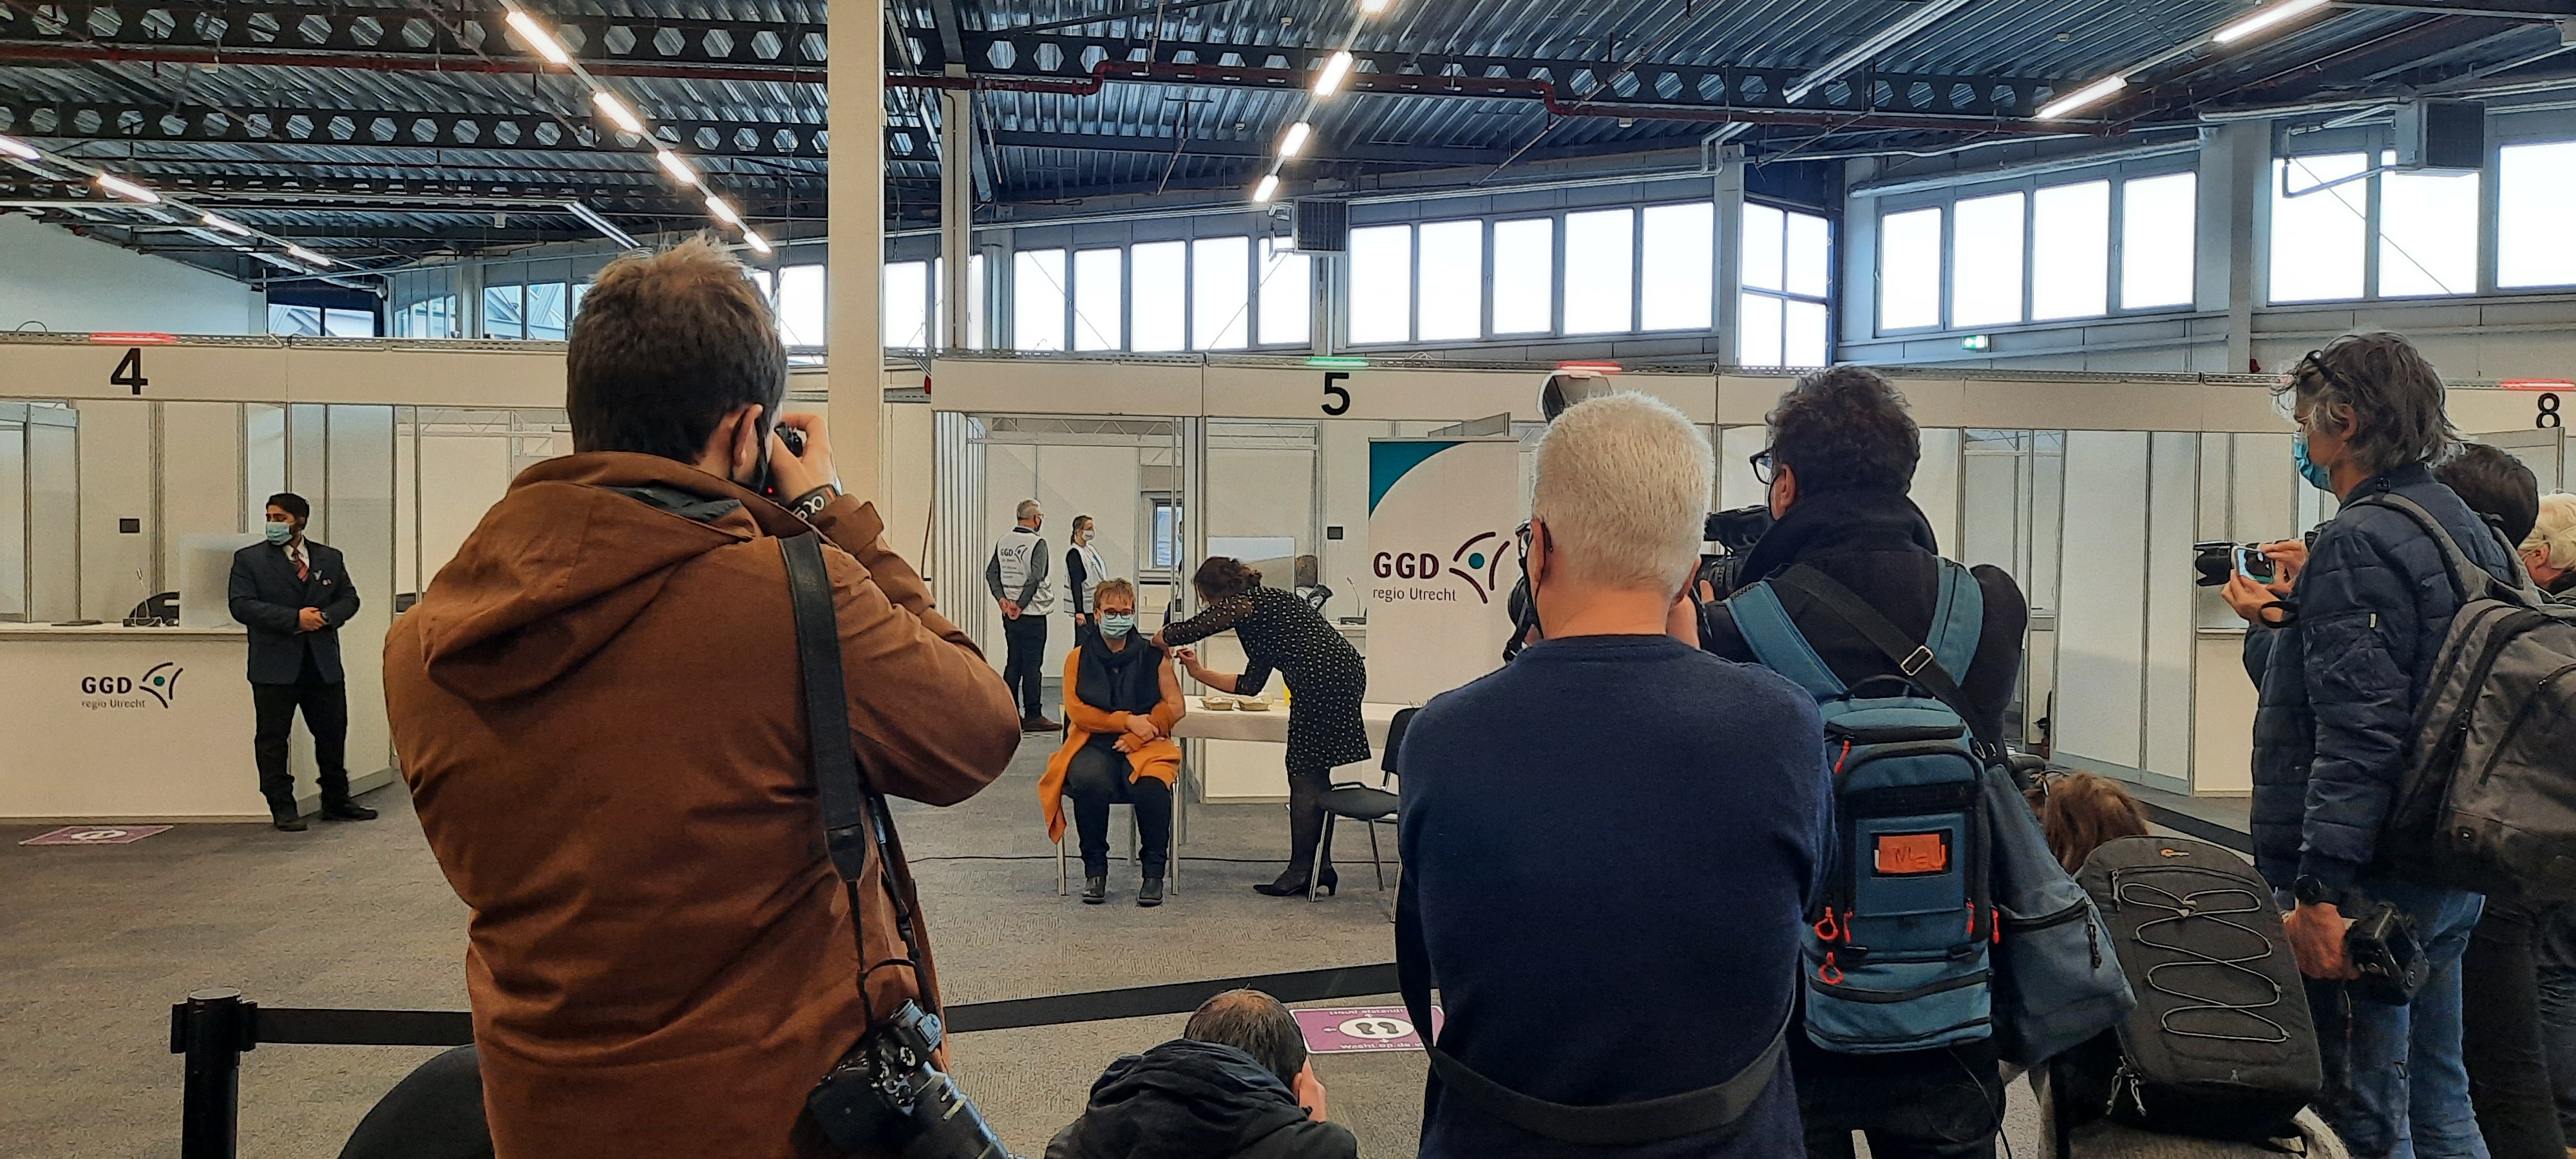 Expo houten eerste Nederlandse evenementenlocatie die de GGD vaccinatielocatie biedt